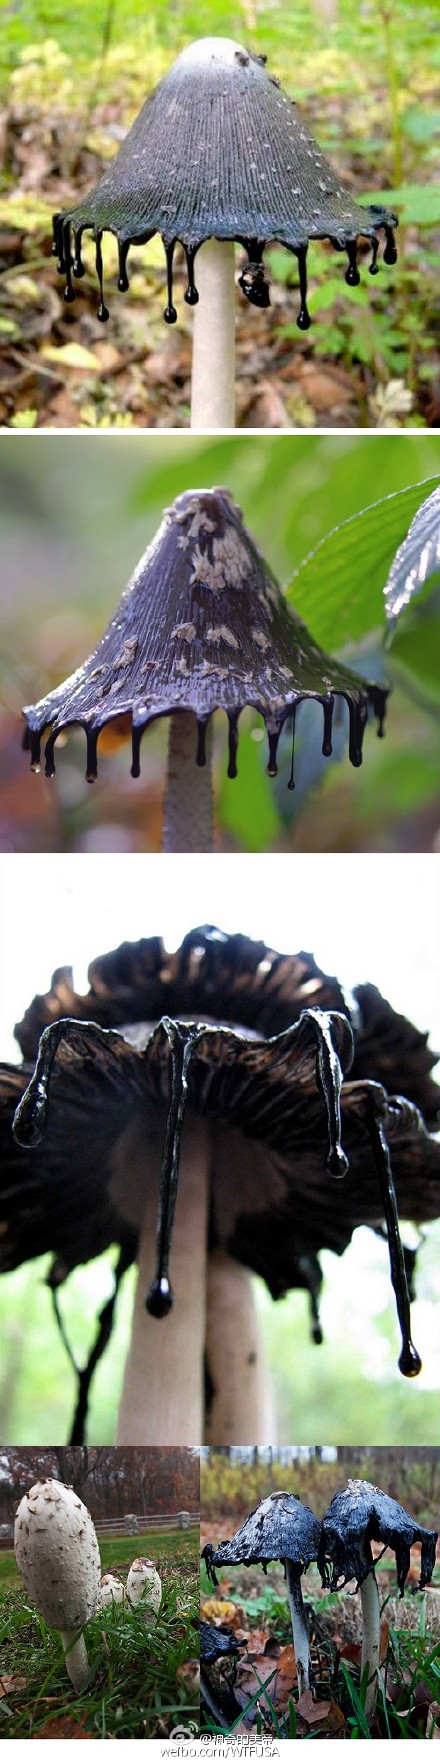 "墨汁鬼伞",因菌褶会变成黑色并液化,如同墨汁滴落而得名 其实鸡腿菇